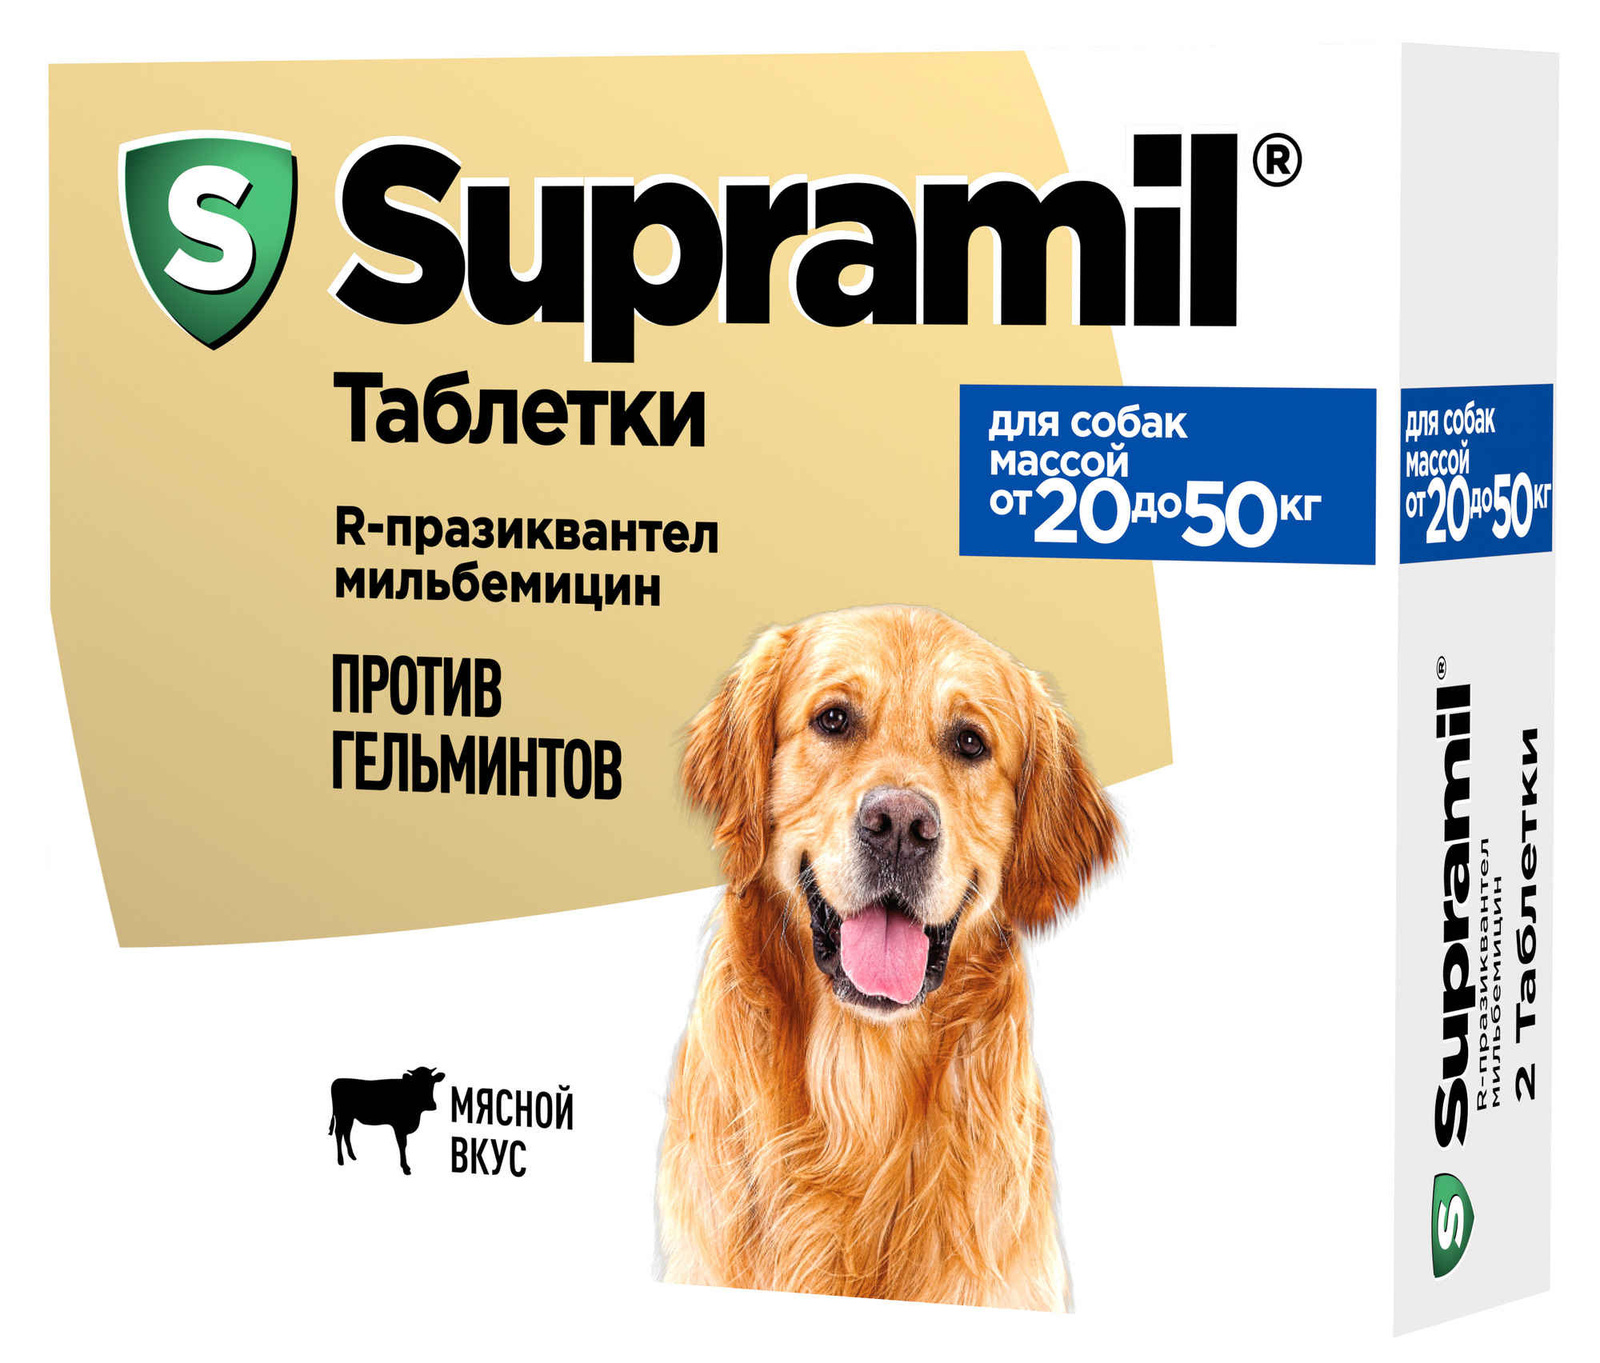 Астрафарм Астрафарм антигельминтный препарат Supramil для щенков и собак массой от 20 до 50 кг, таблетки (20 г) крка жевательные таблетки кладакса антибактериальный препарат широкого спектра 250 мг мг 0 03 кг 3 штуки